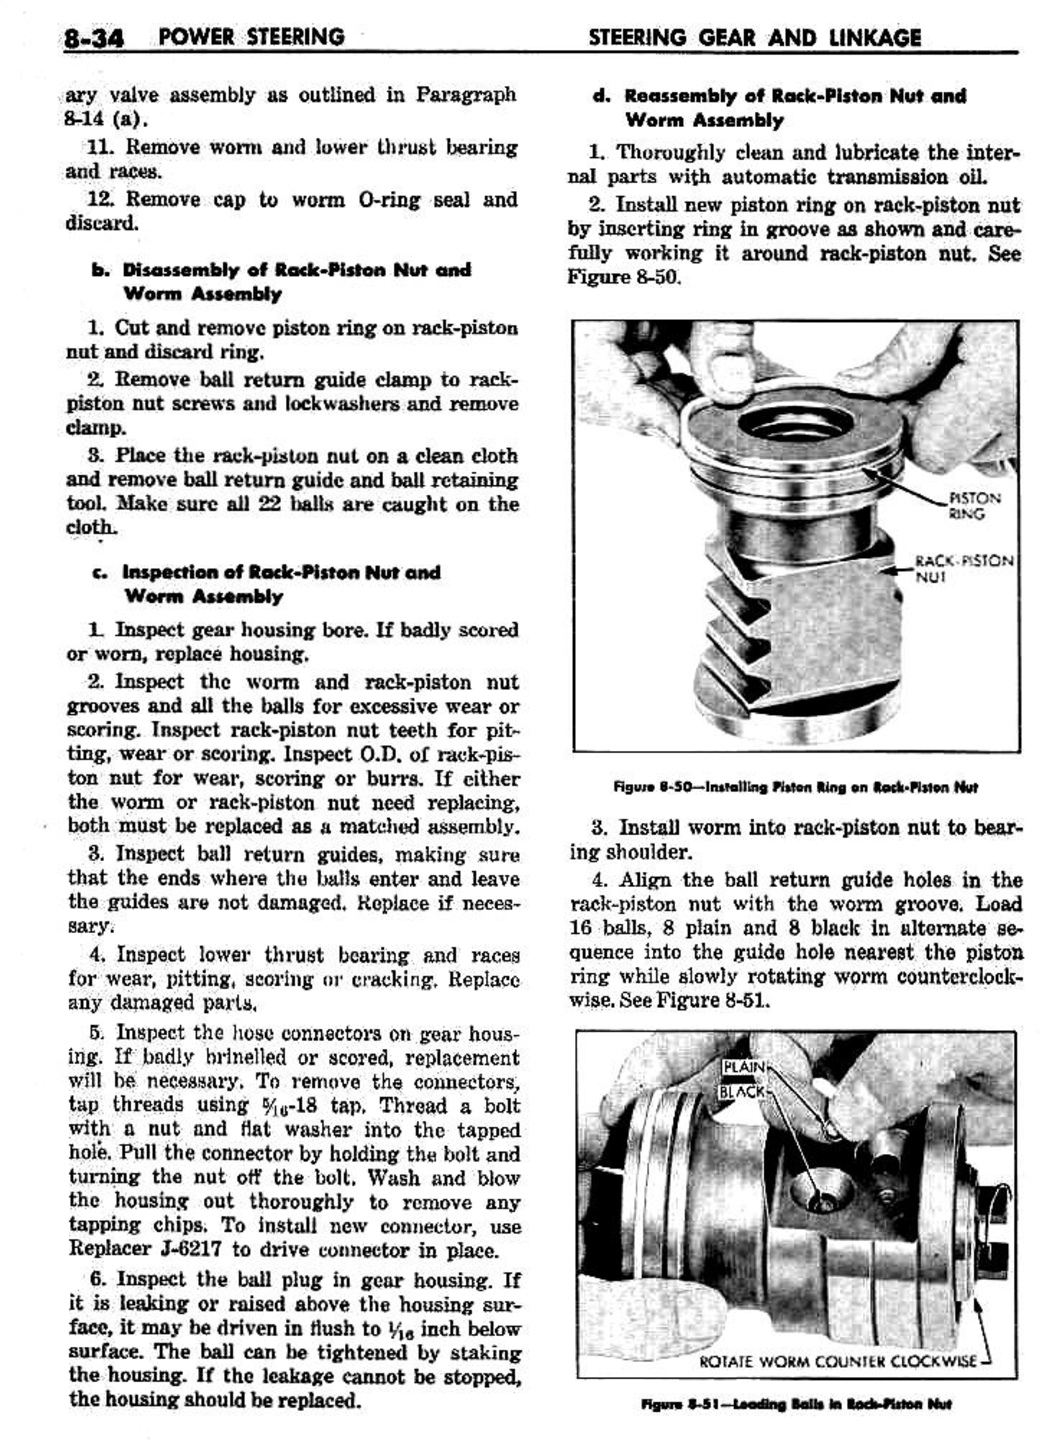 n_09 1959 Buick Shop Manual - Steering-034-034.jpg